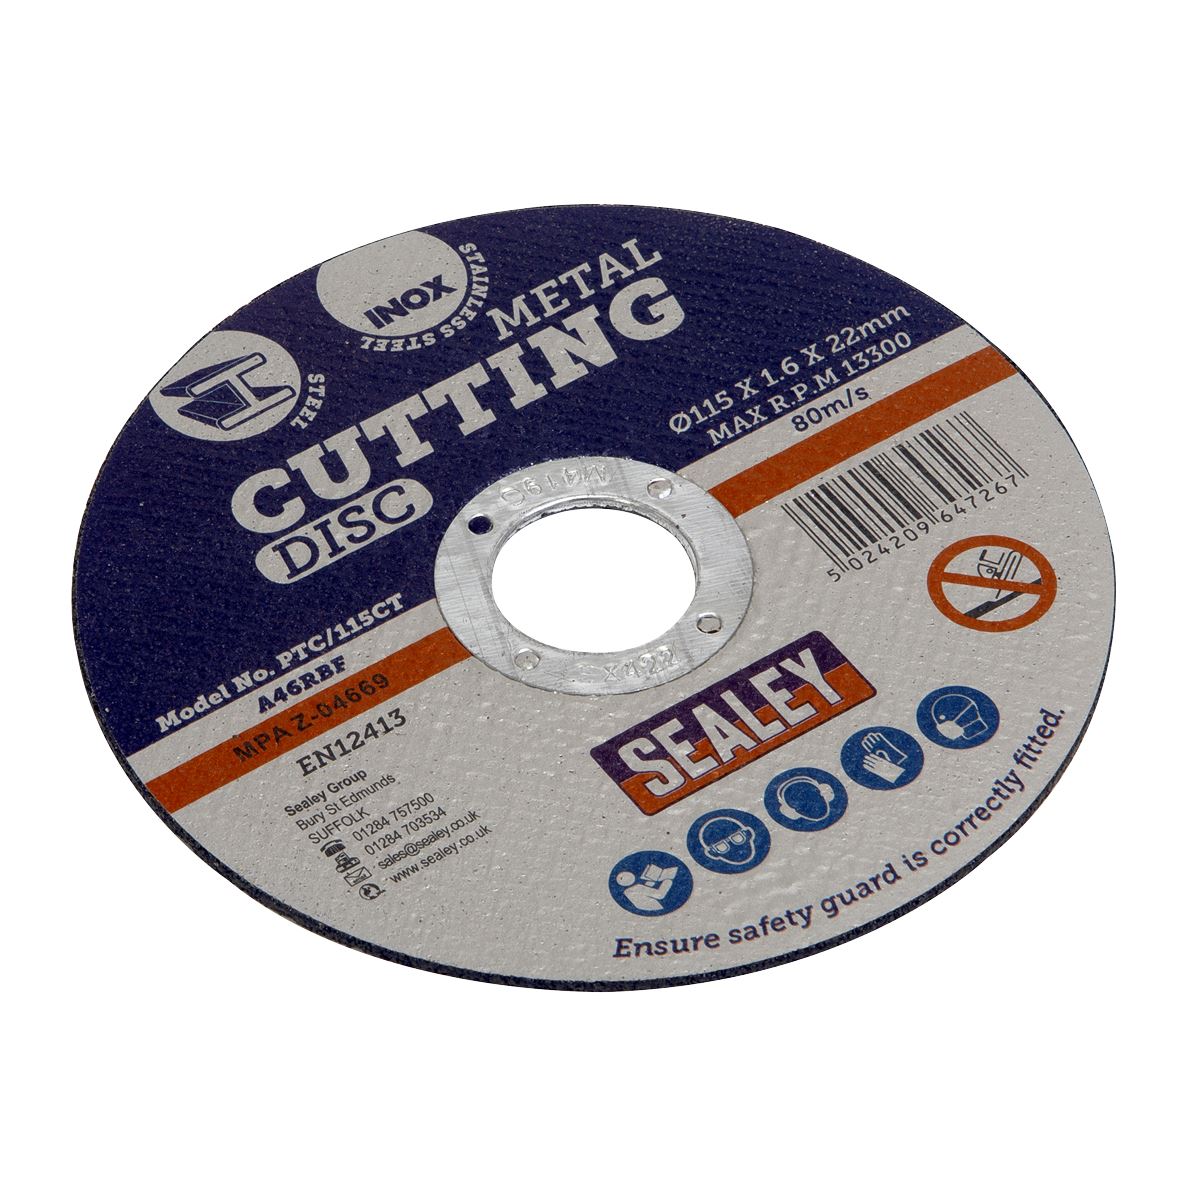 Sealey Cutting Disc Ø115 x 1.6mm Ø22mm Bore